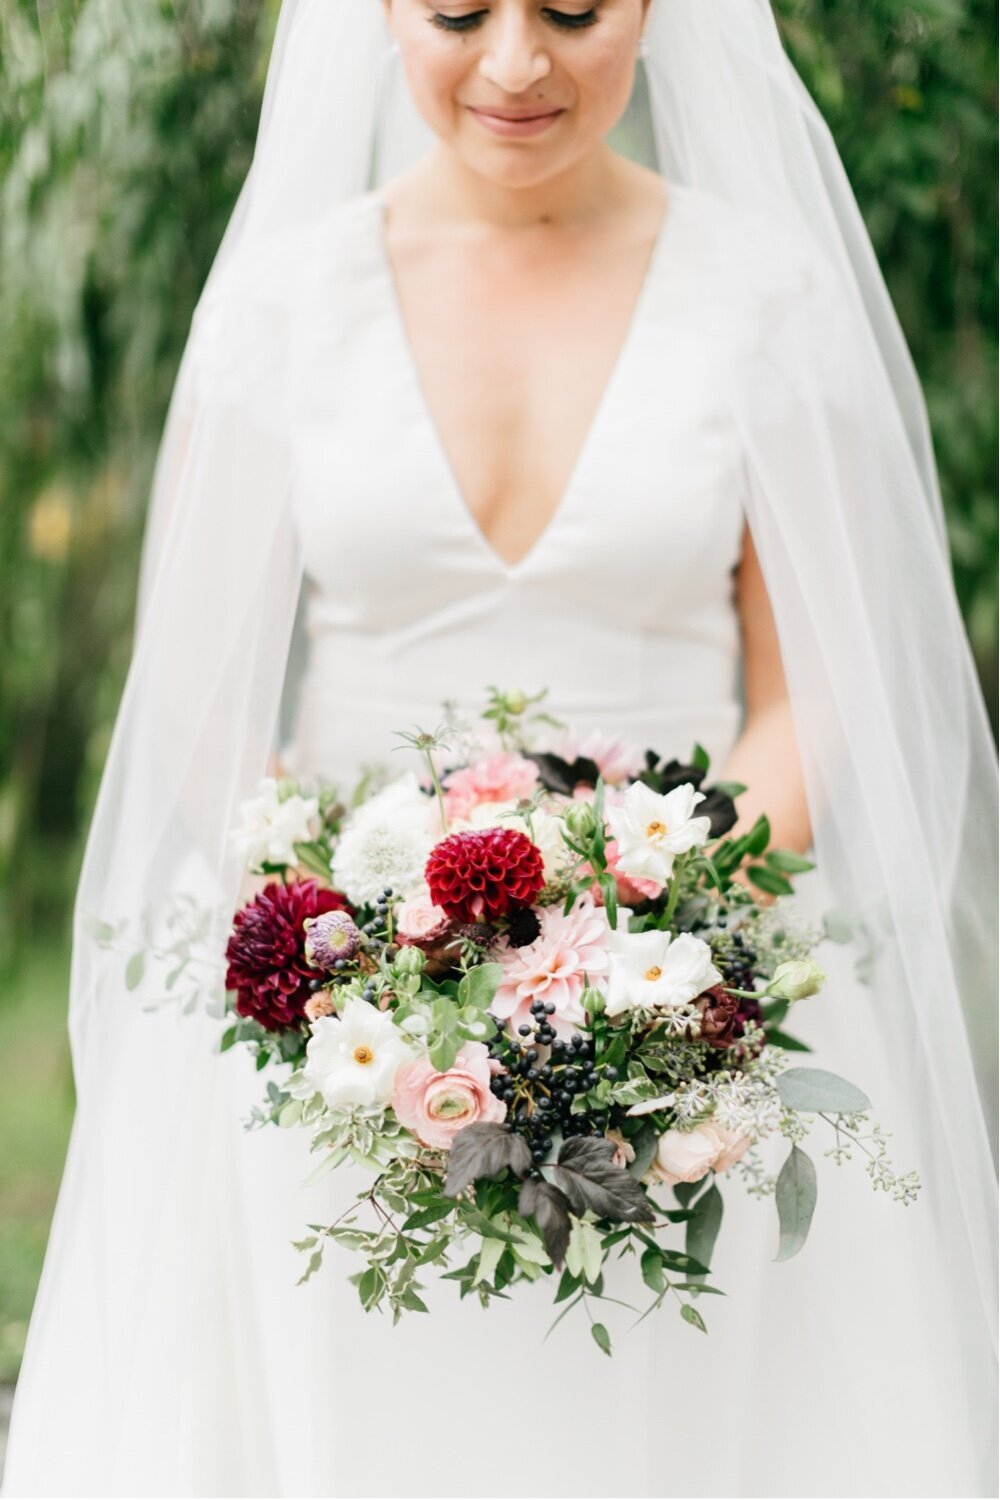 179_burgandy-and-white-wedding-bouquet_the-inn-at-barley-sheaf-farm-wedding_Philadelphia-wedding-photography